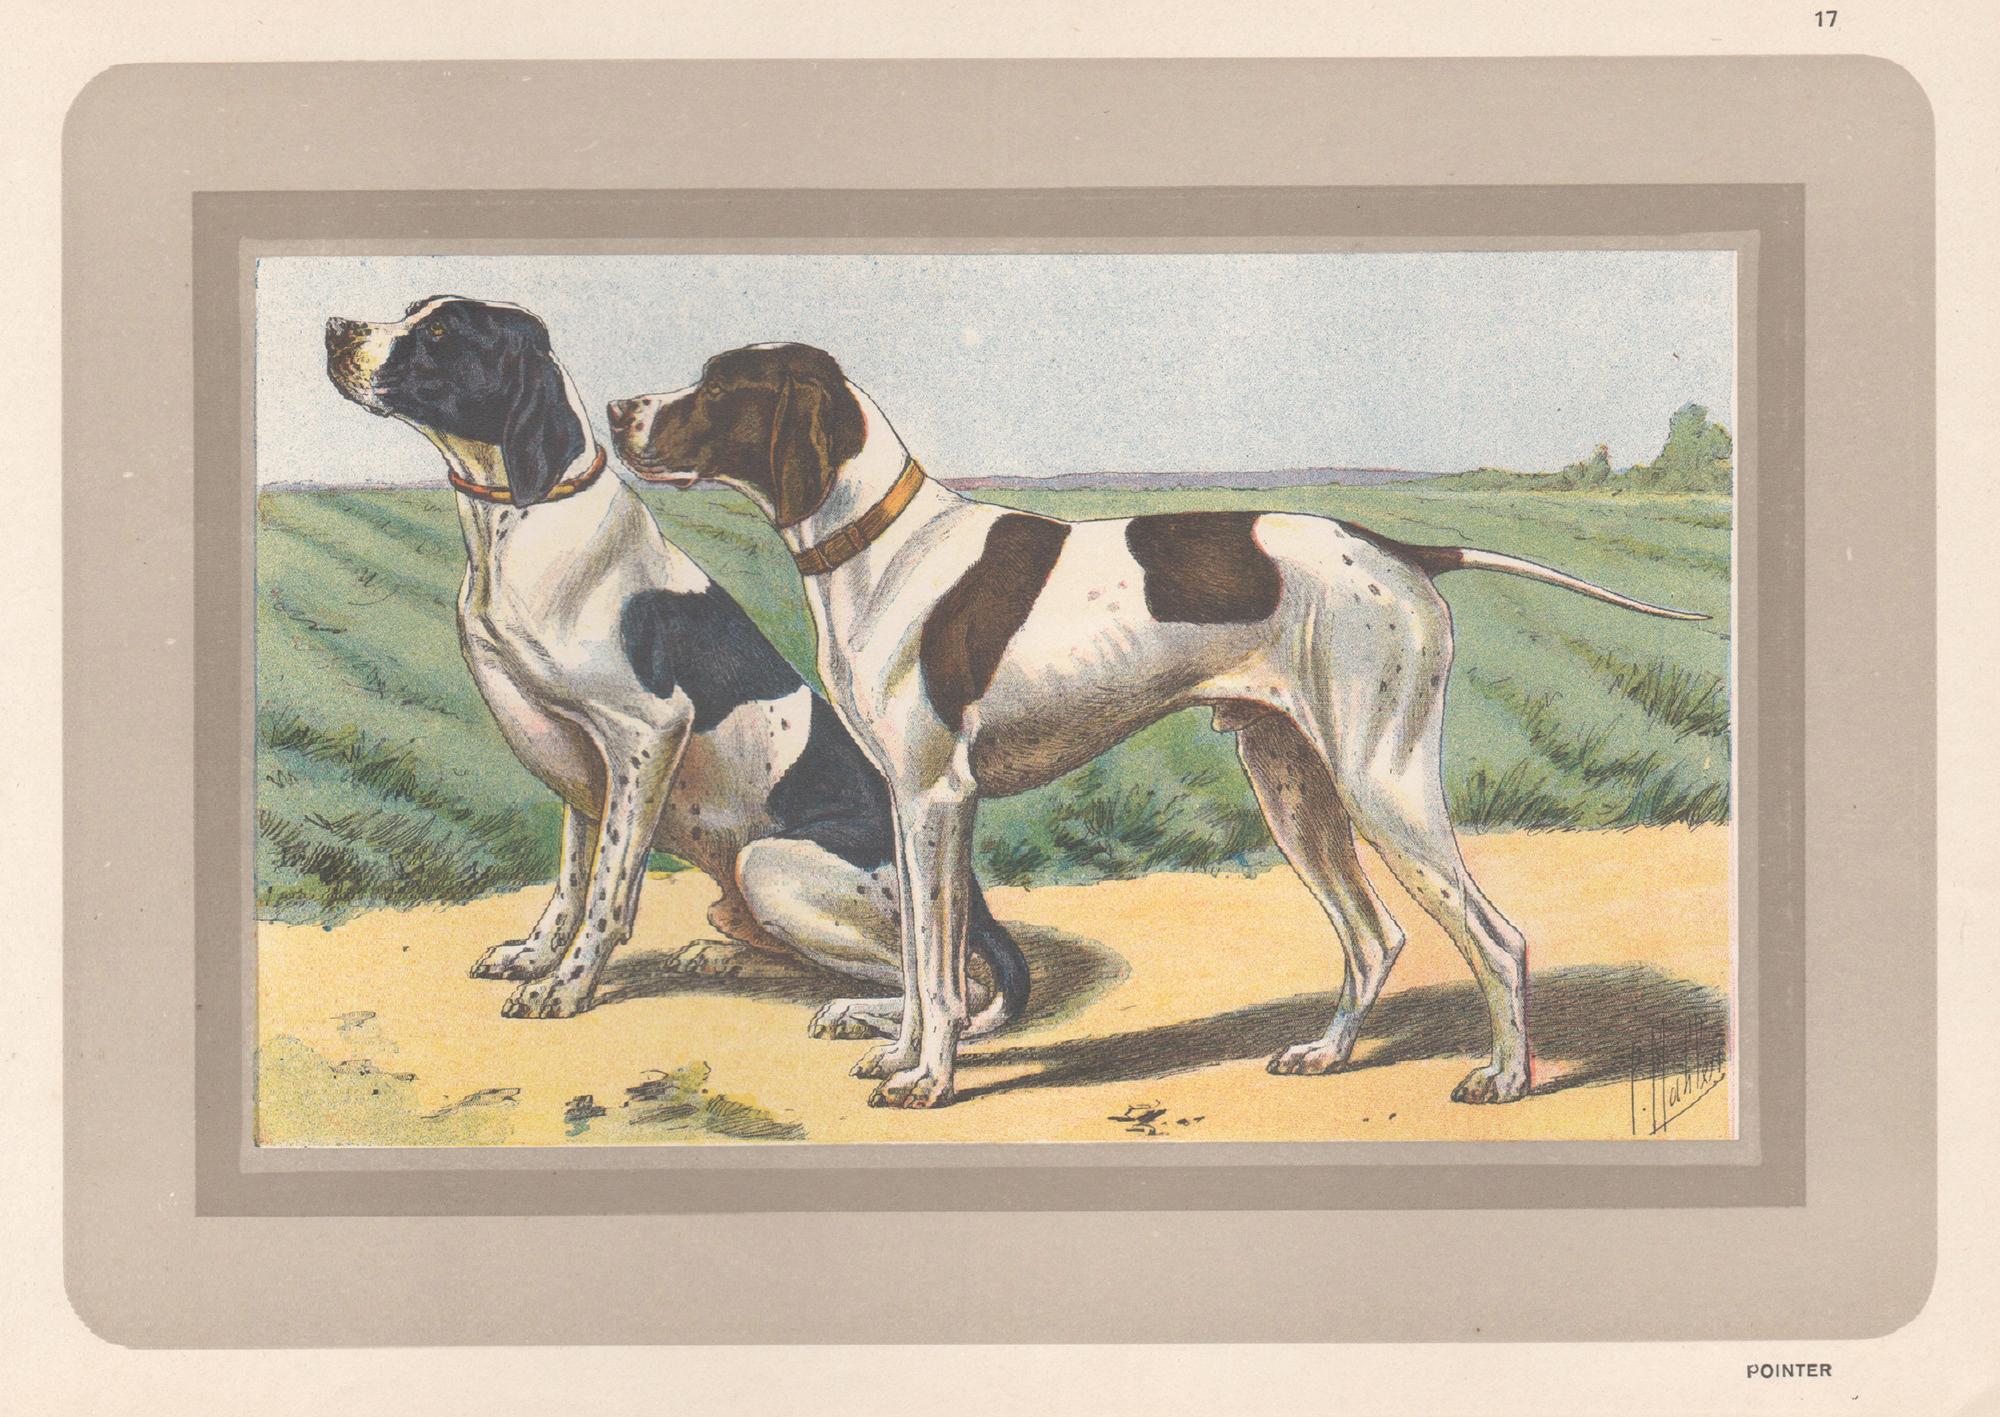 P. Mahler Animal Print – Pointer, Französischer Chromolithographiedruck mit Hund, 1930er-Jahre